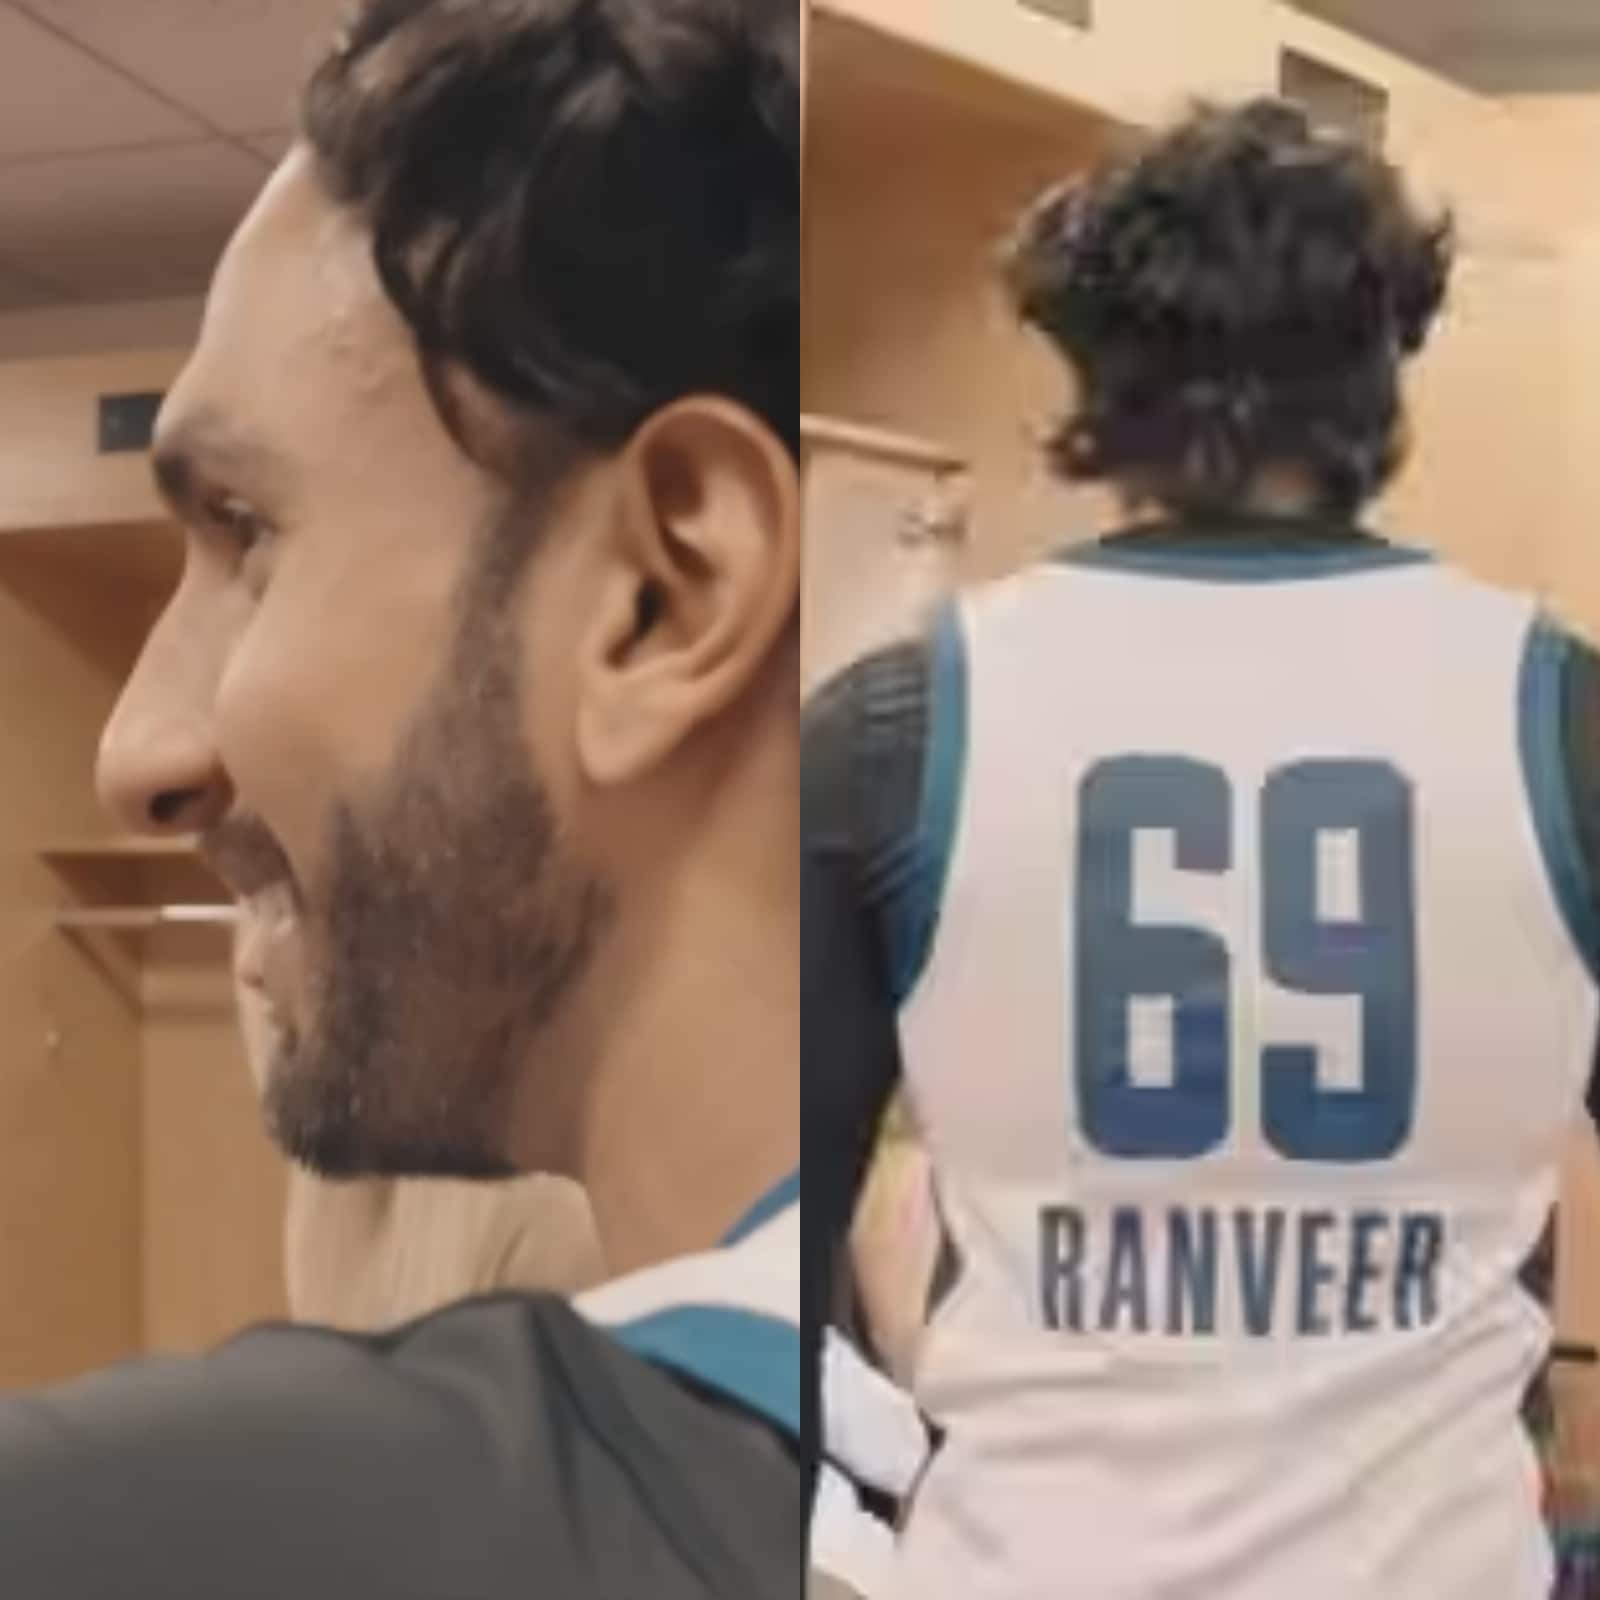 Ranveer Singh NBA : Ranveer Singh's massive social media following